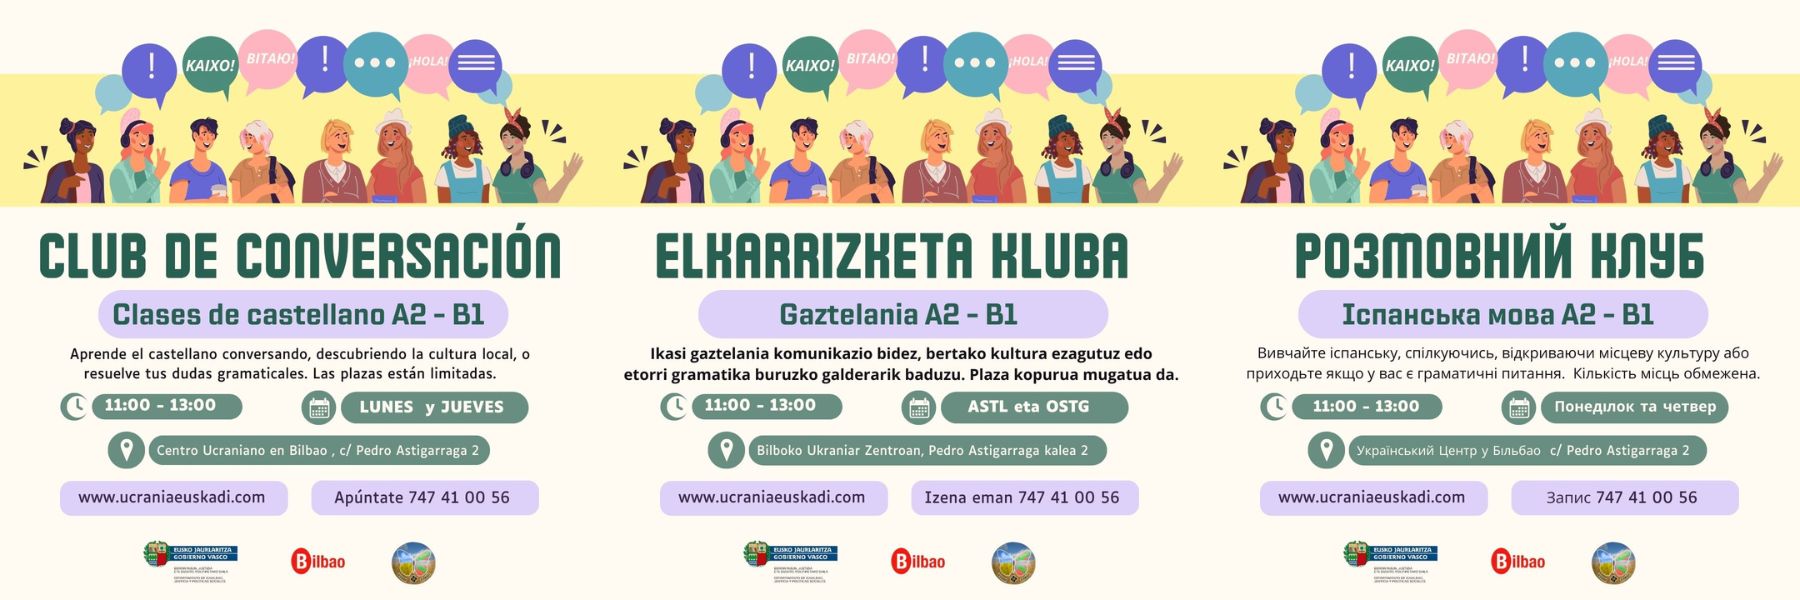 Cartel para anunciar el reincio del Club de conversación para practicar castellano en el Centro Ucraniano en Bilbao